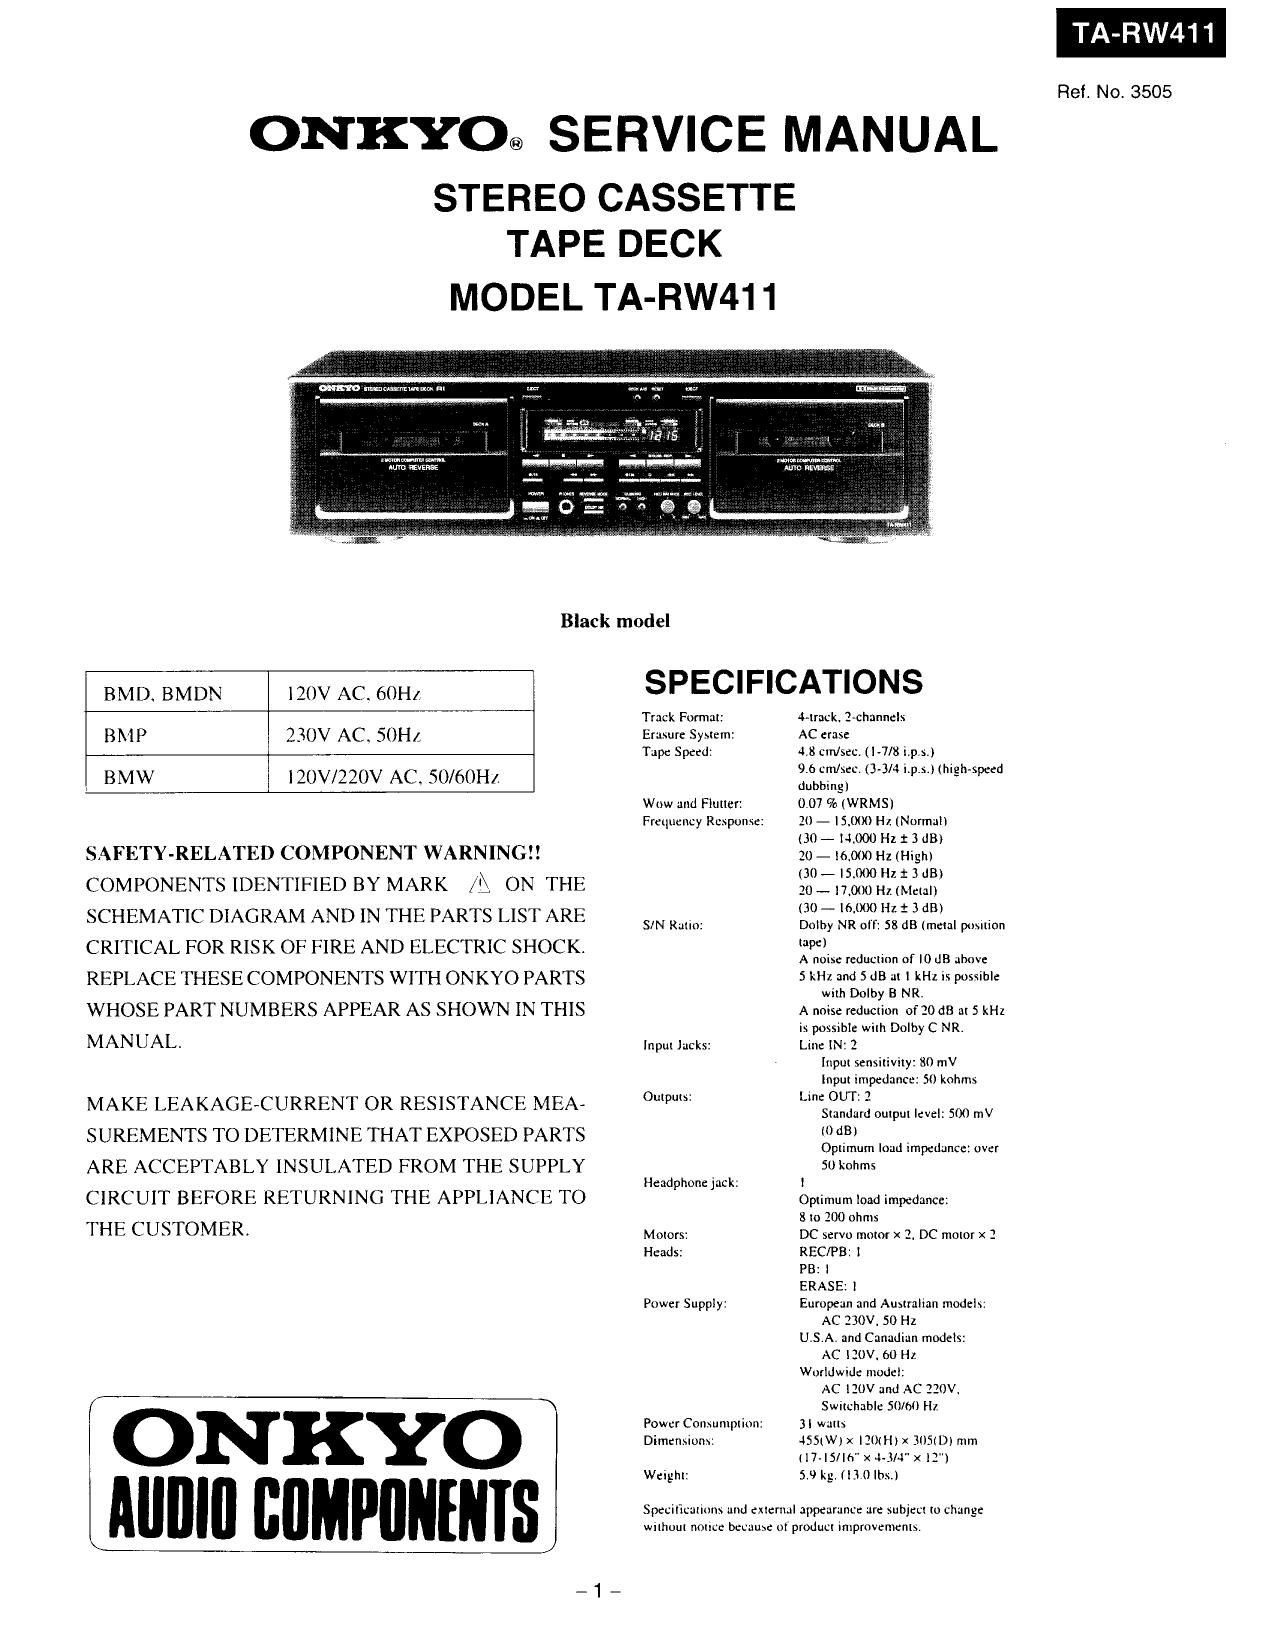 Onkyo TARW 411 Service Manual